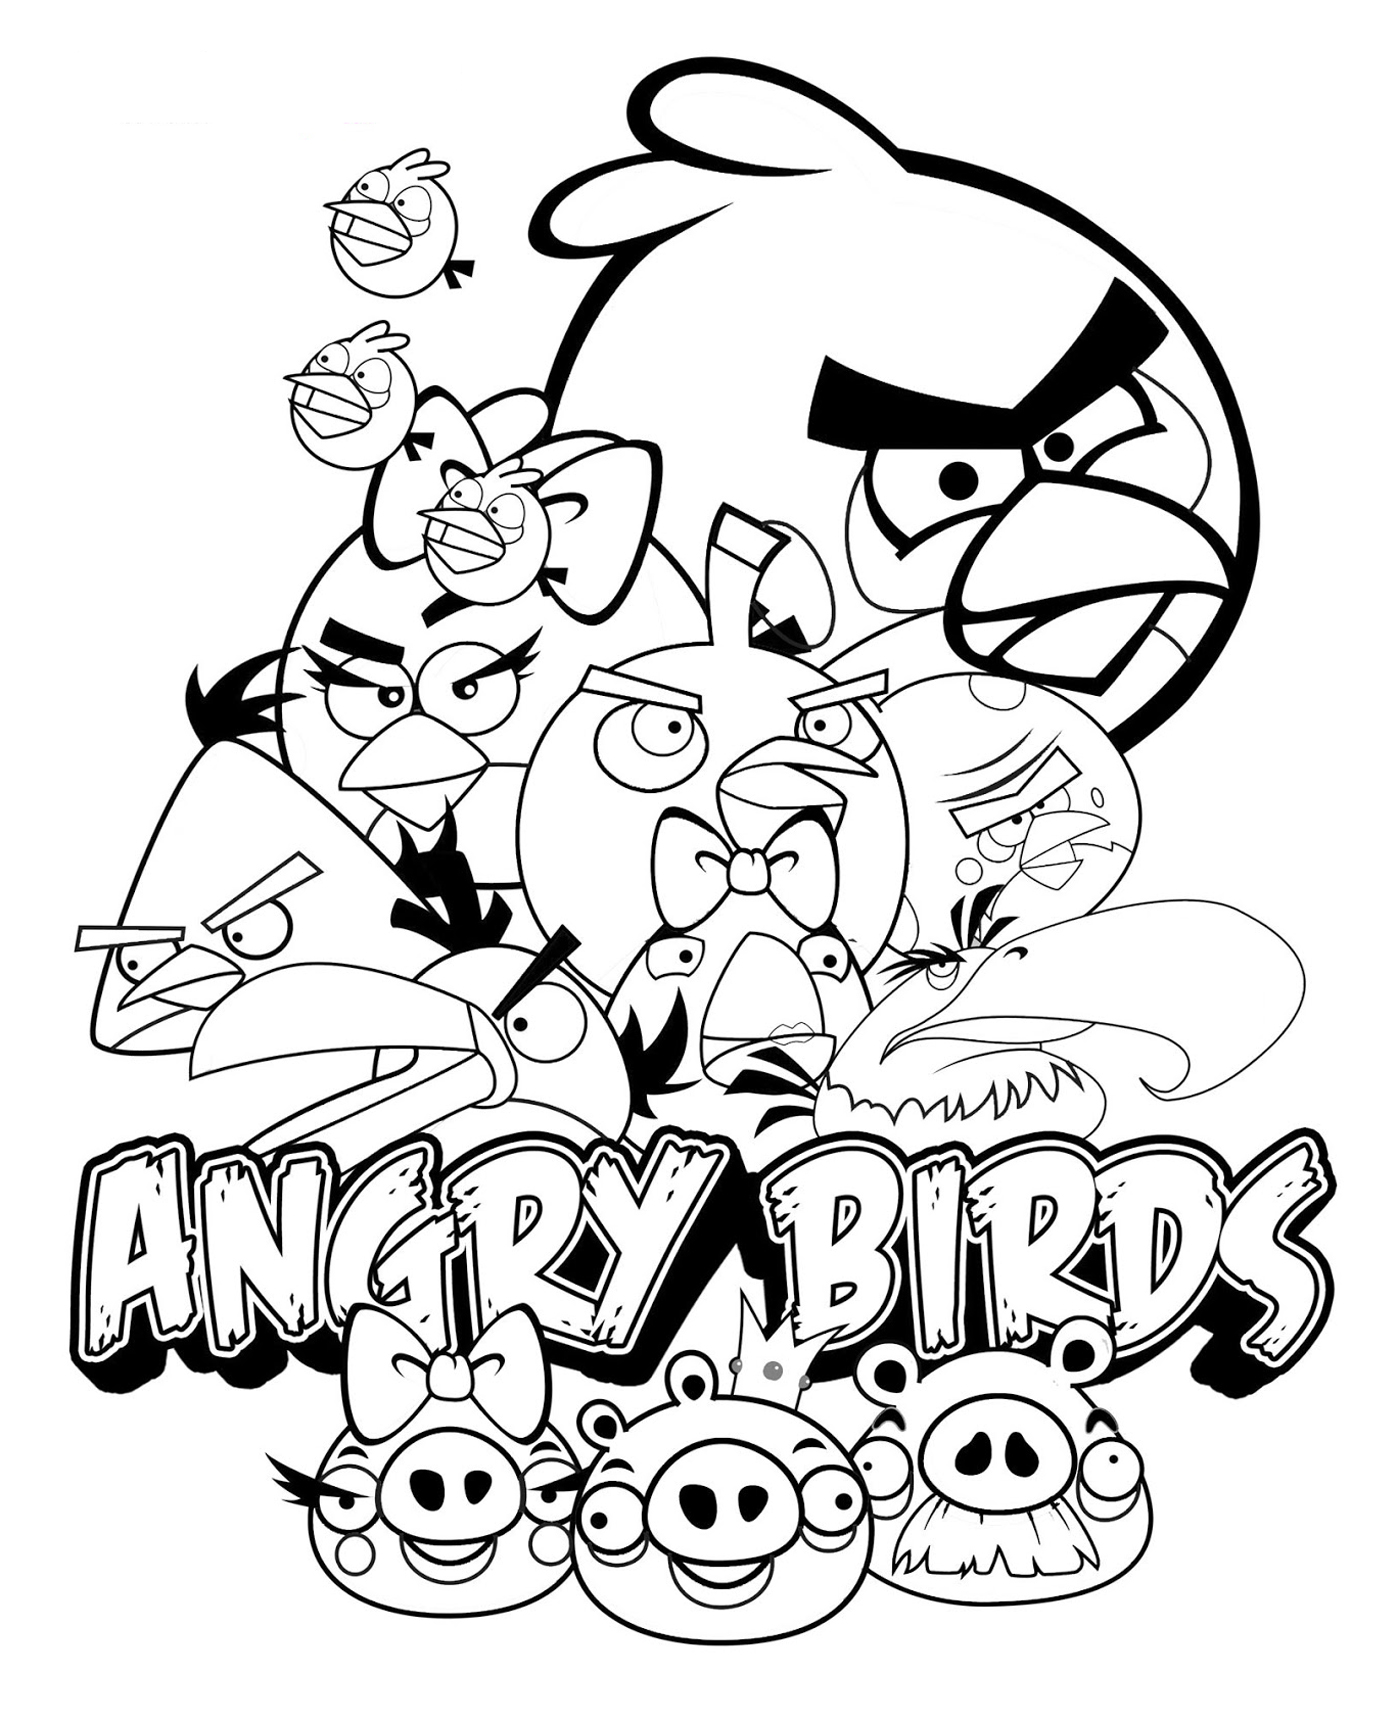 Image de Angry birds à imprimer et à colorier